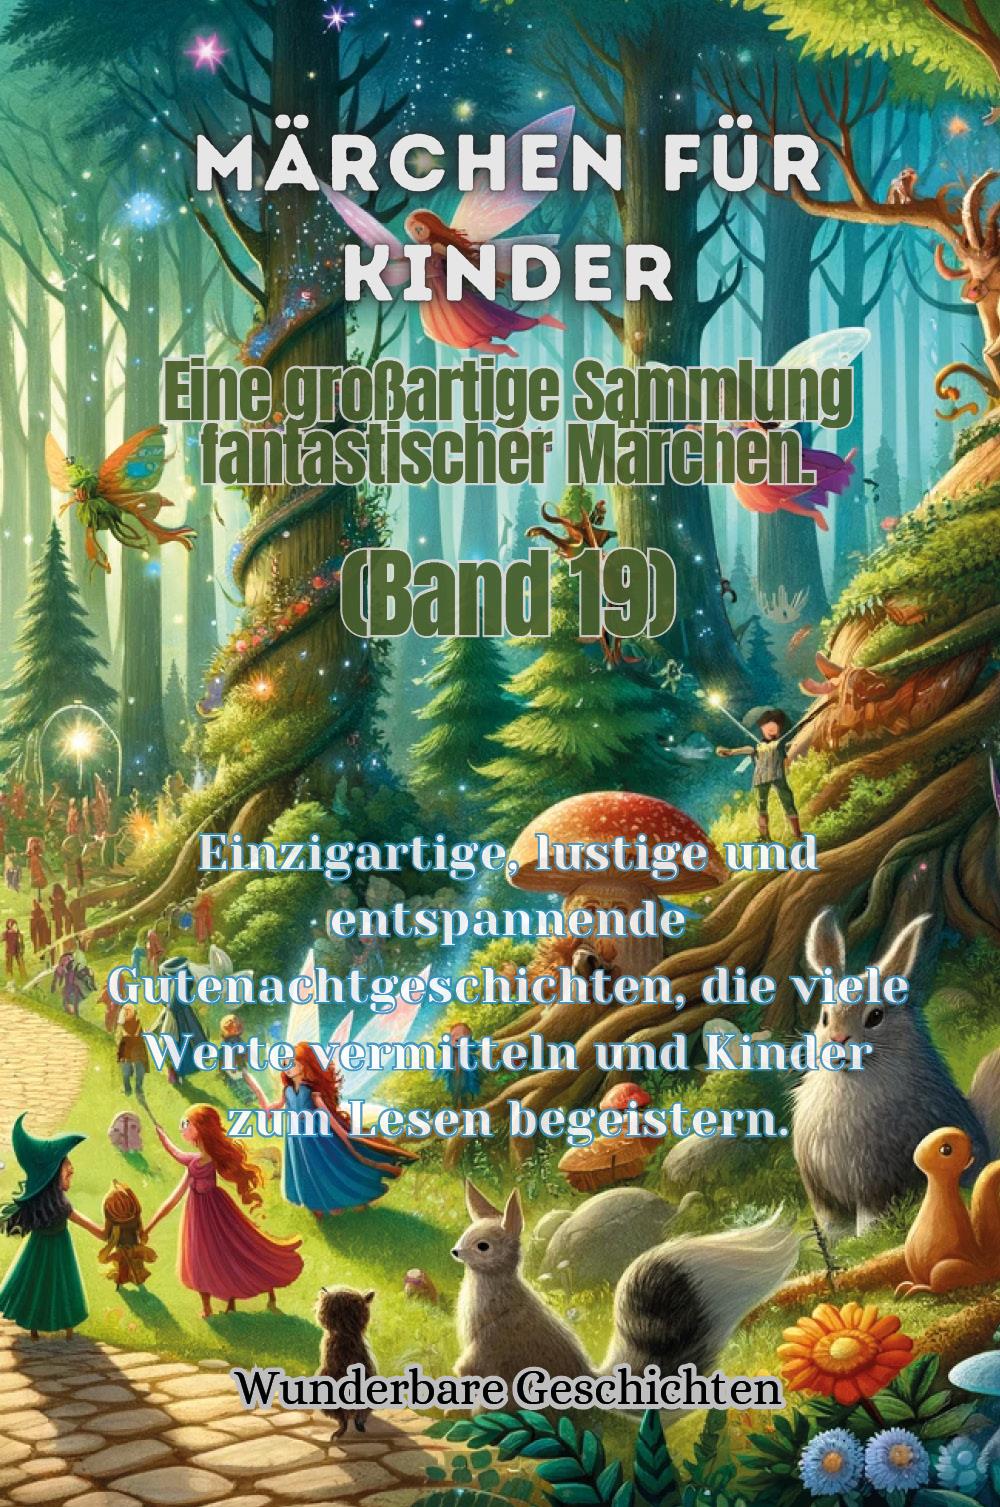 Märchen für Kinder Eine großartige Sammlung fantastischer Märchen. (Band 19)